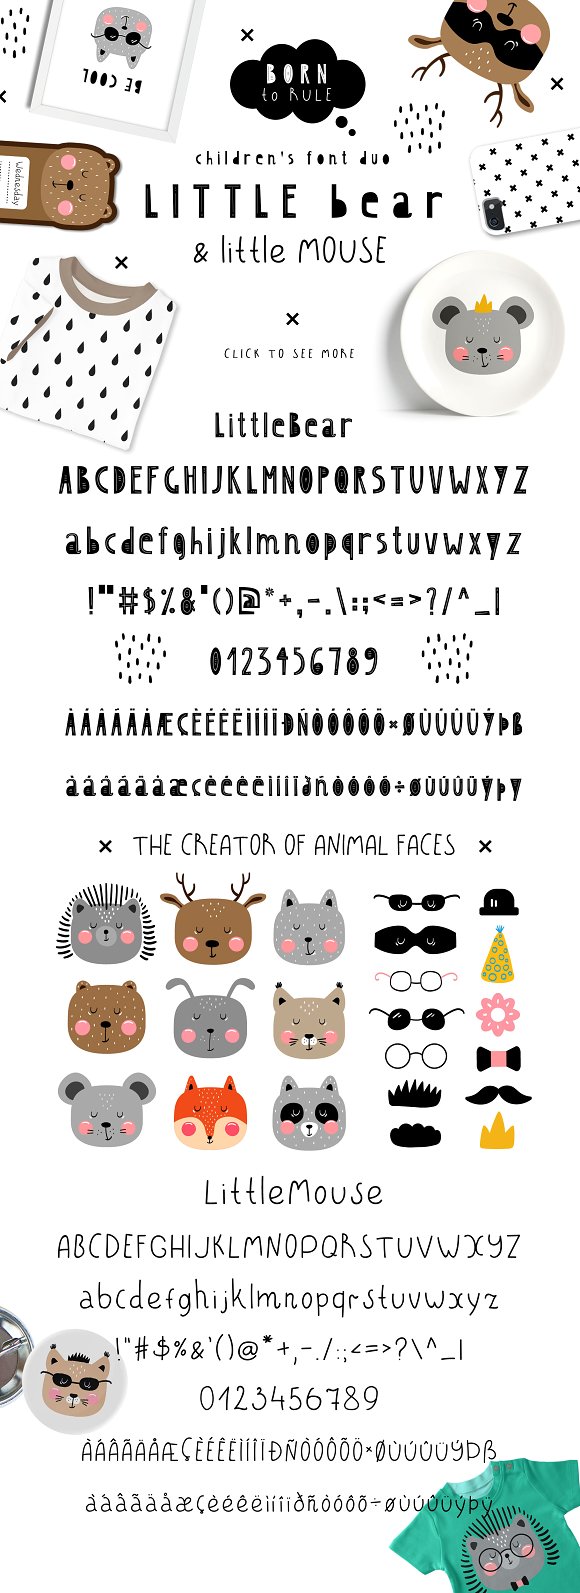 LittleBear & LittleMouse – Font Duo16设计网精选英文字体